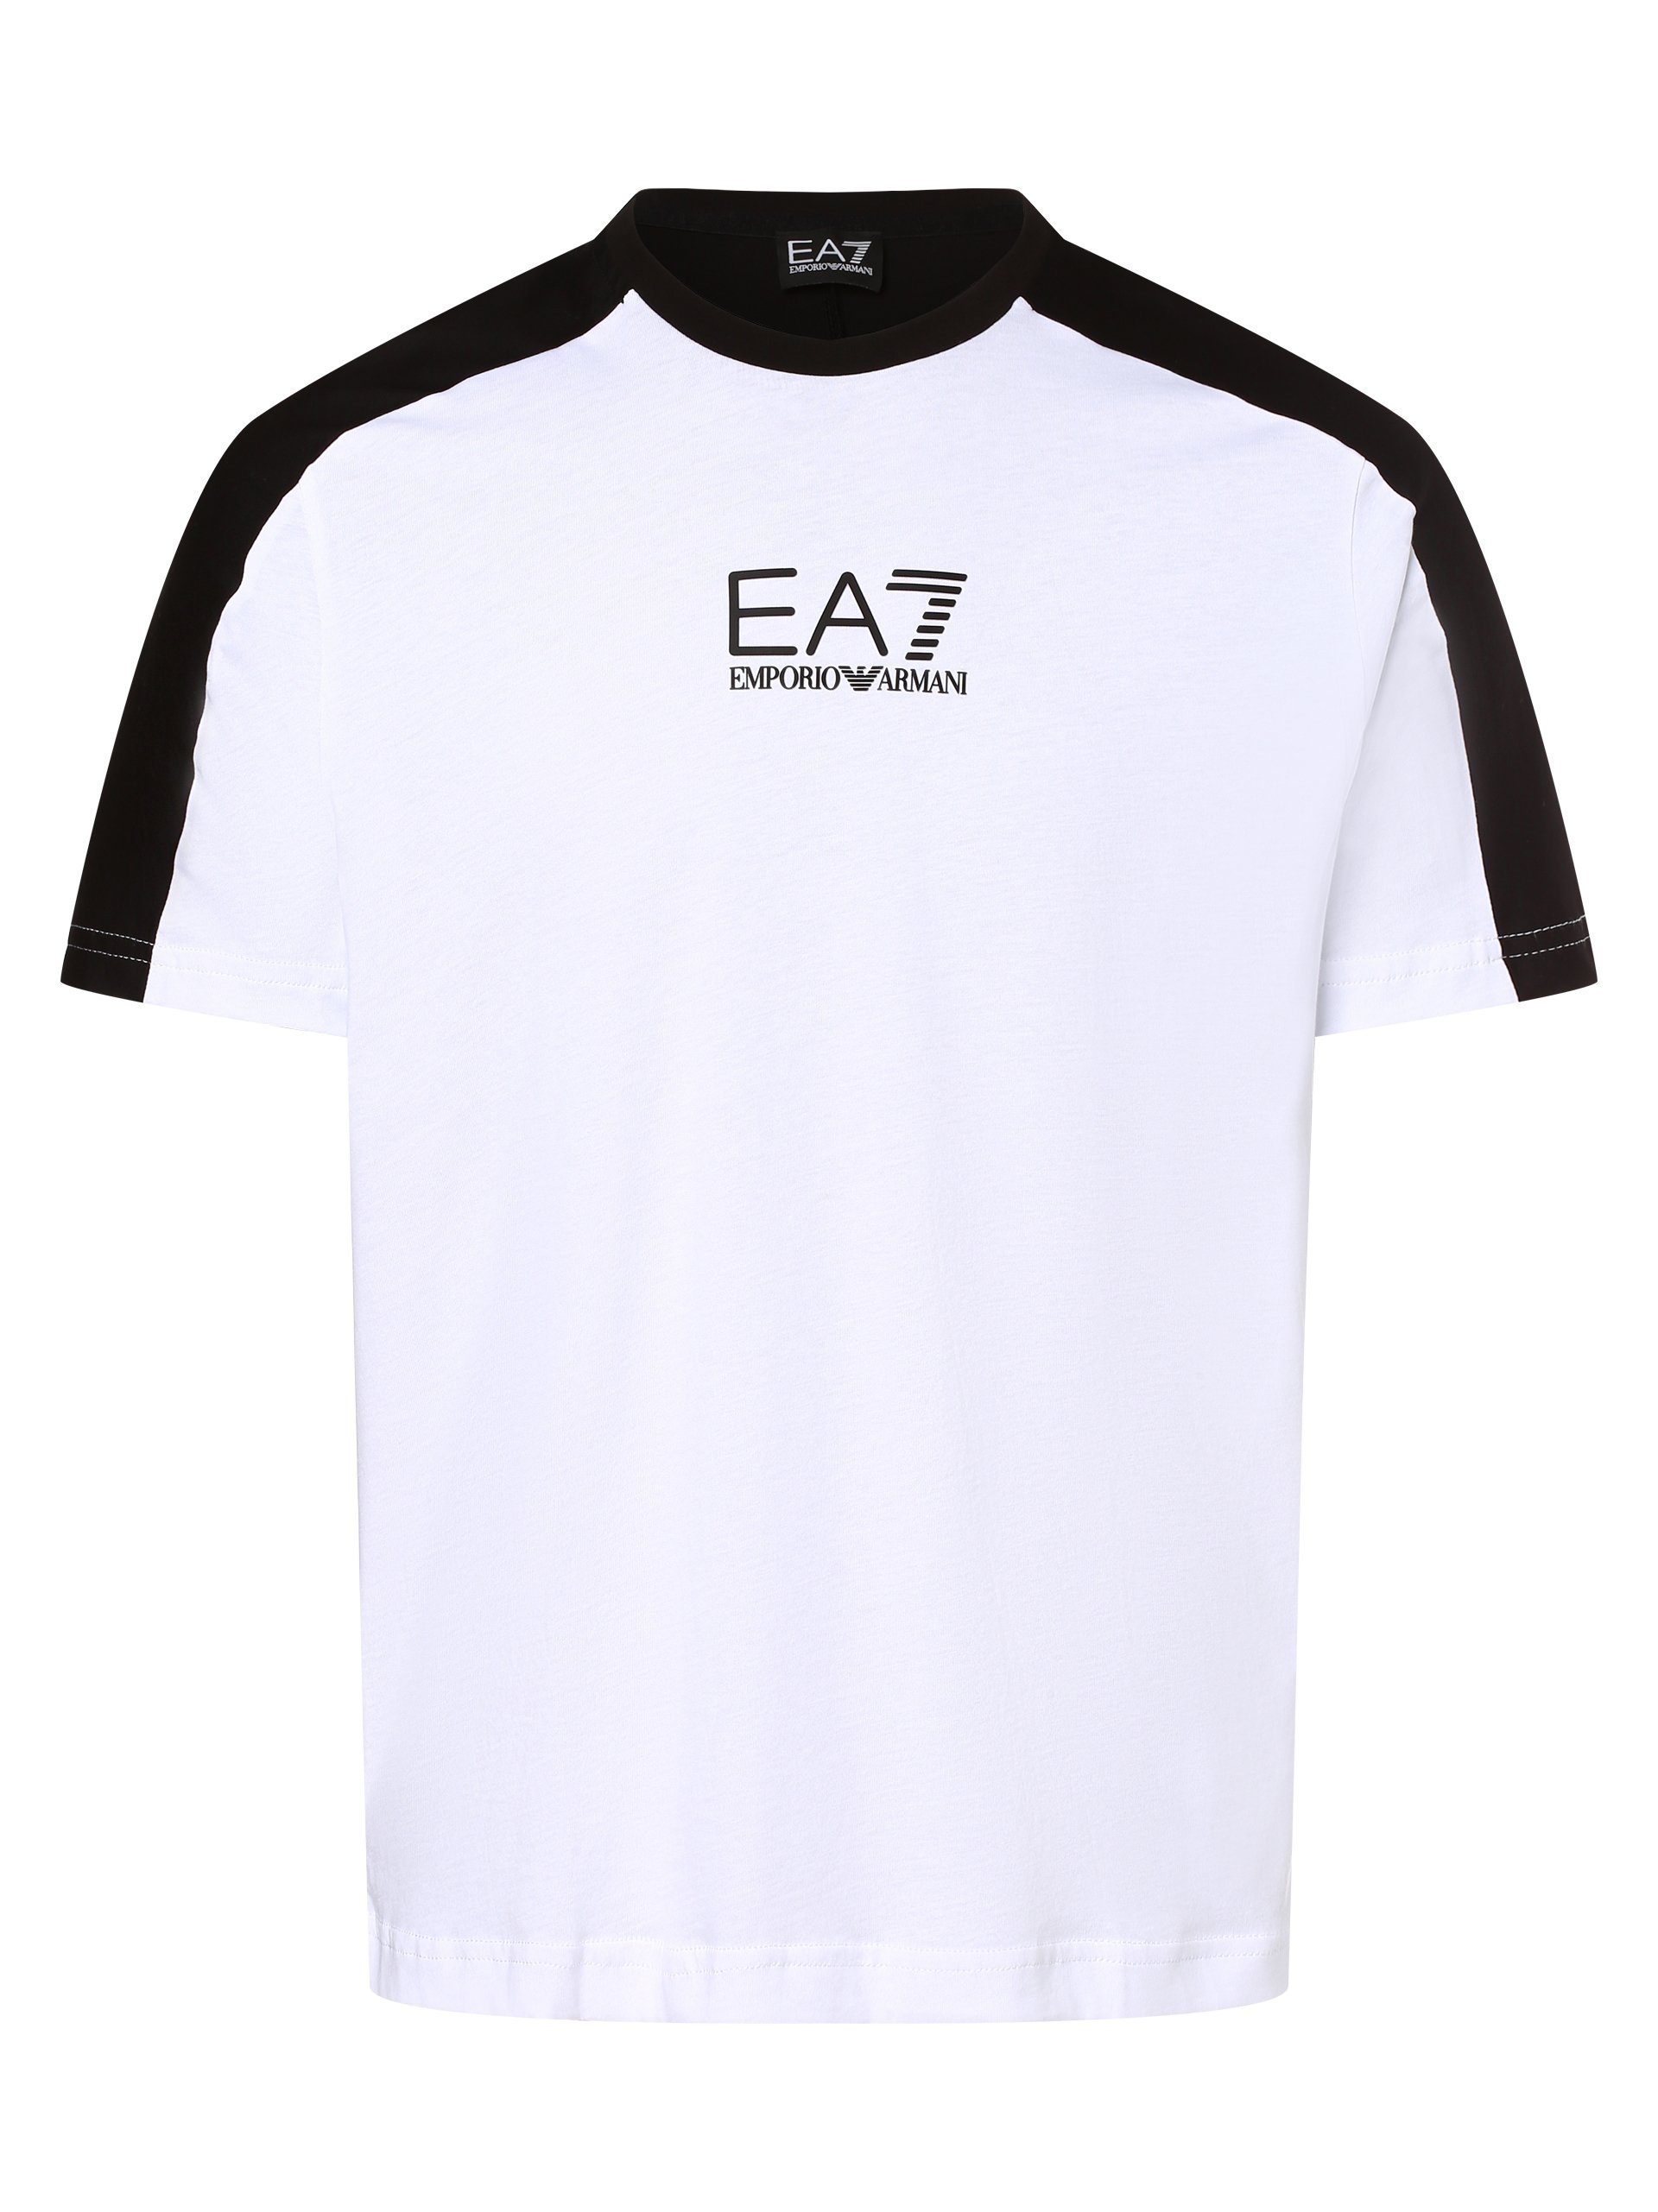 Emporio Armani T-Shirt weiß schwarz